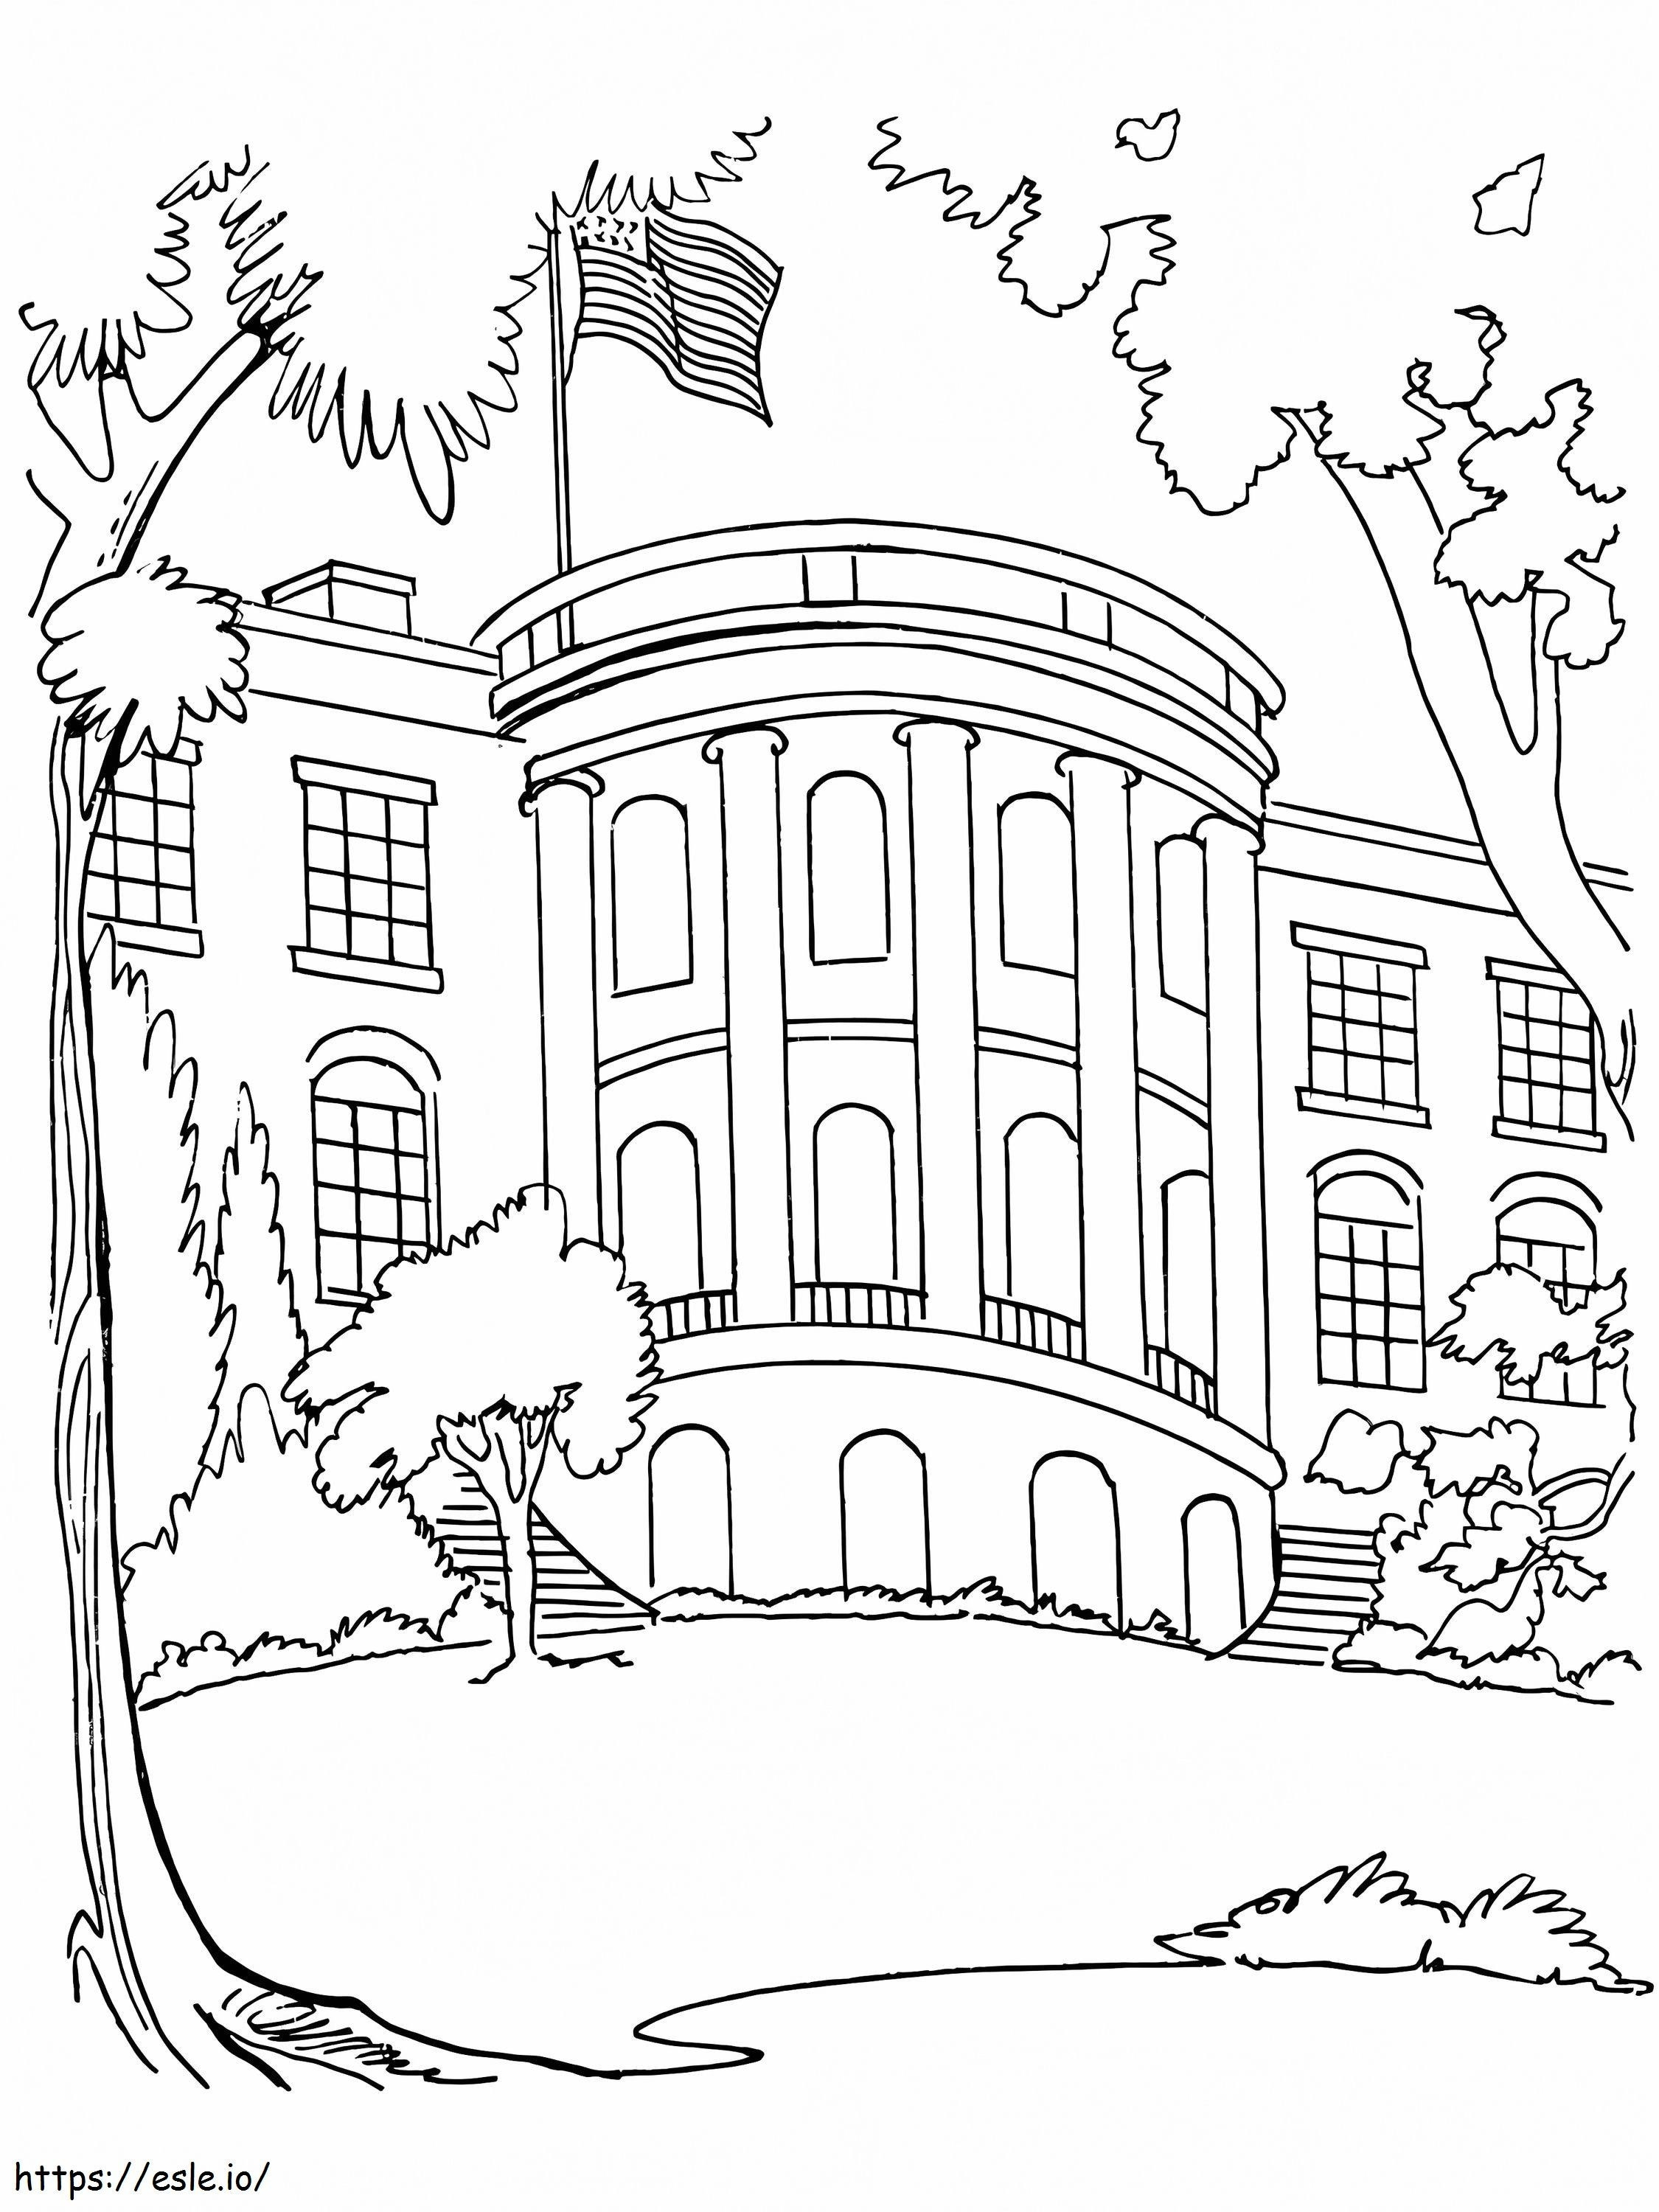 Coloriage Maison Blanche libre à imprimer dessin